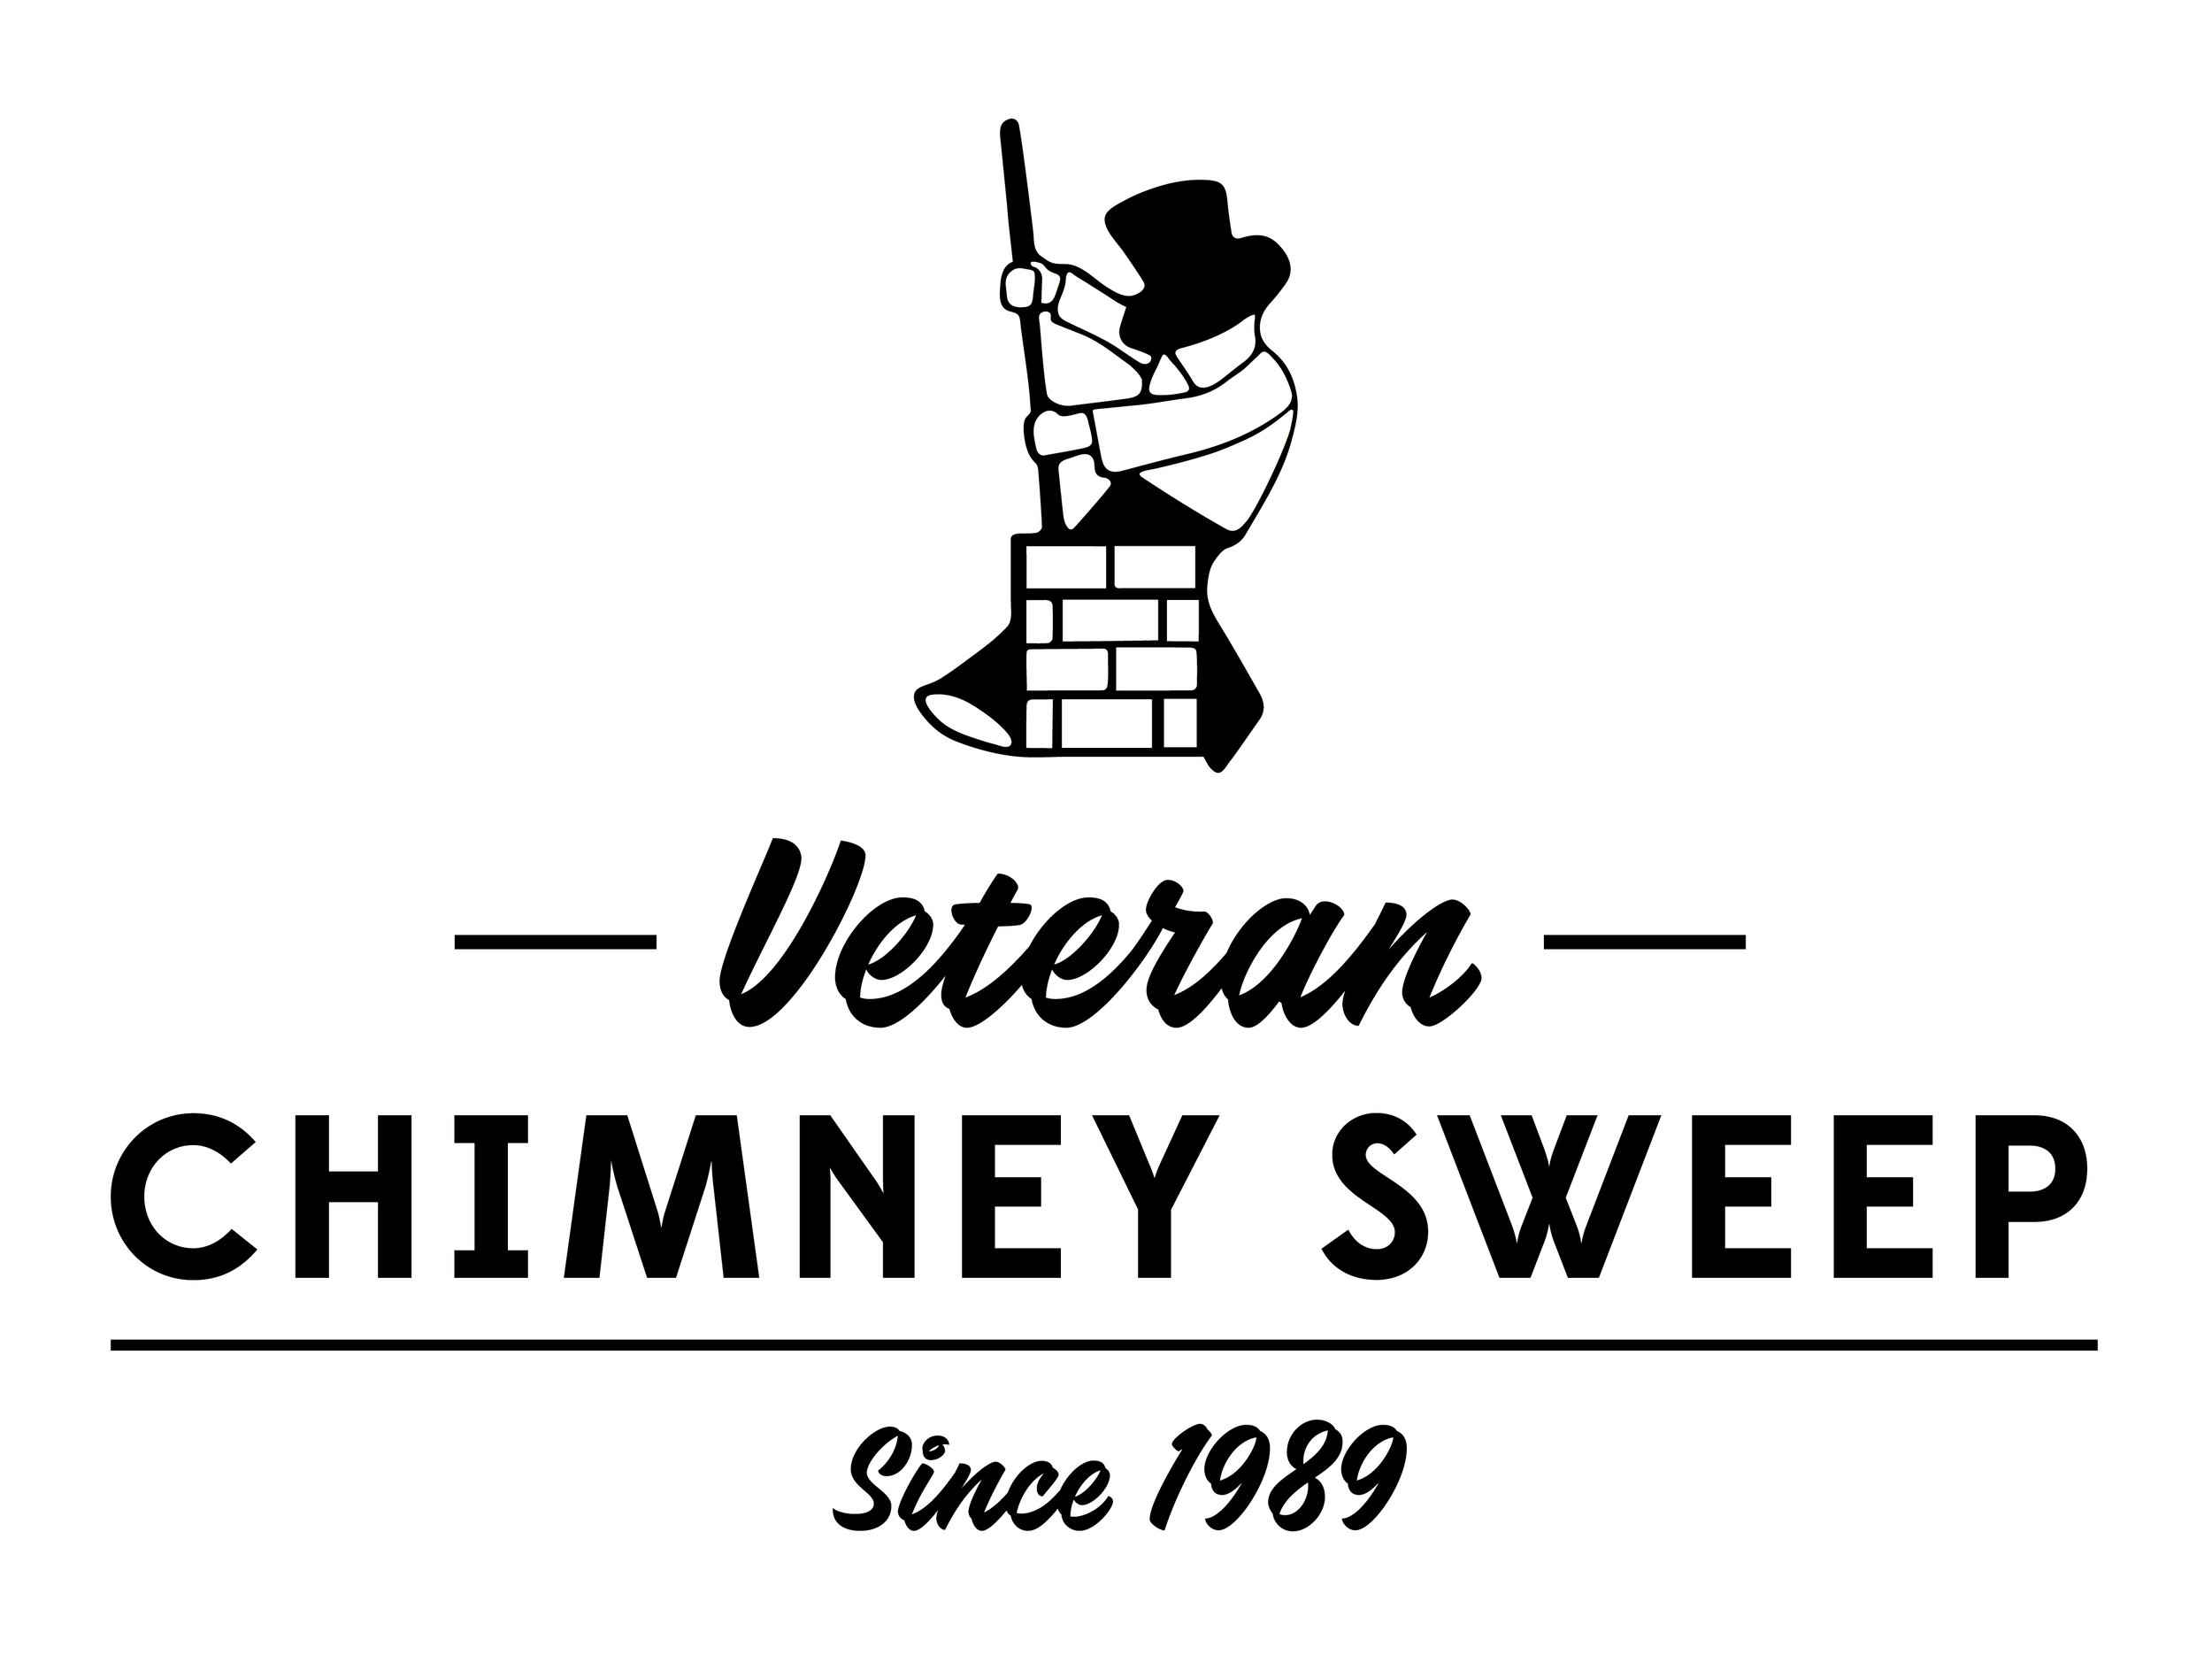 Veteran Chimney Sweep